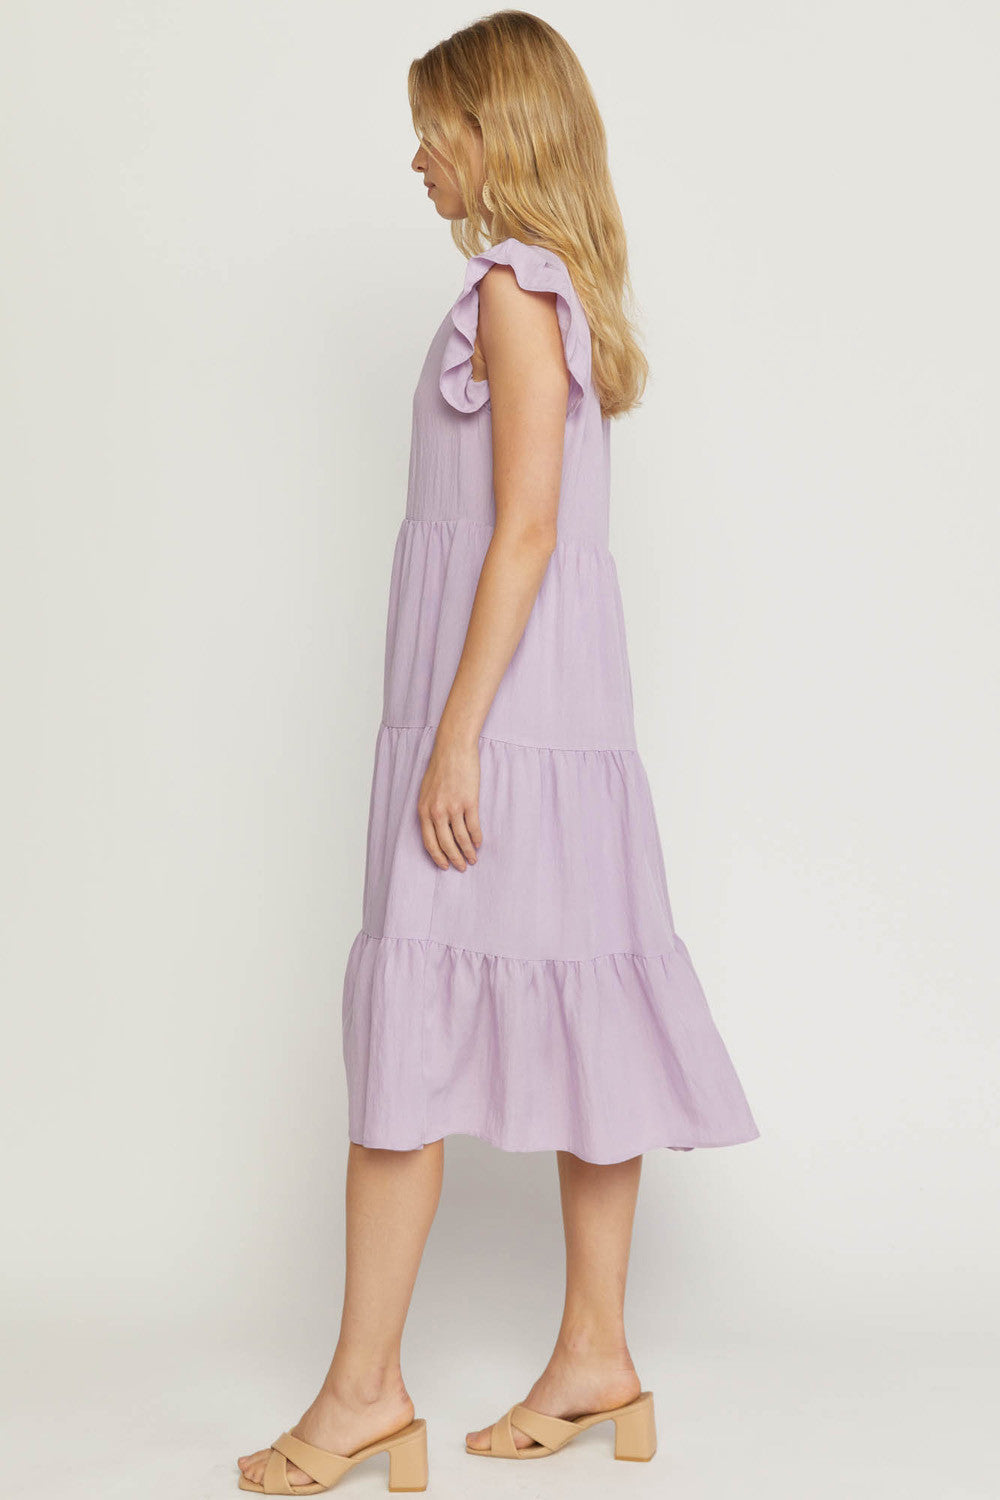 Lavender Dress Plus Size